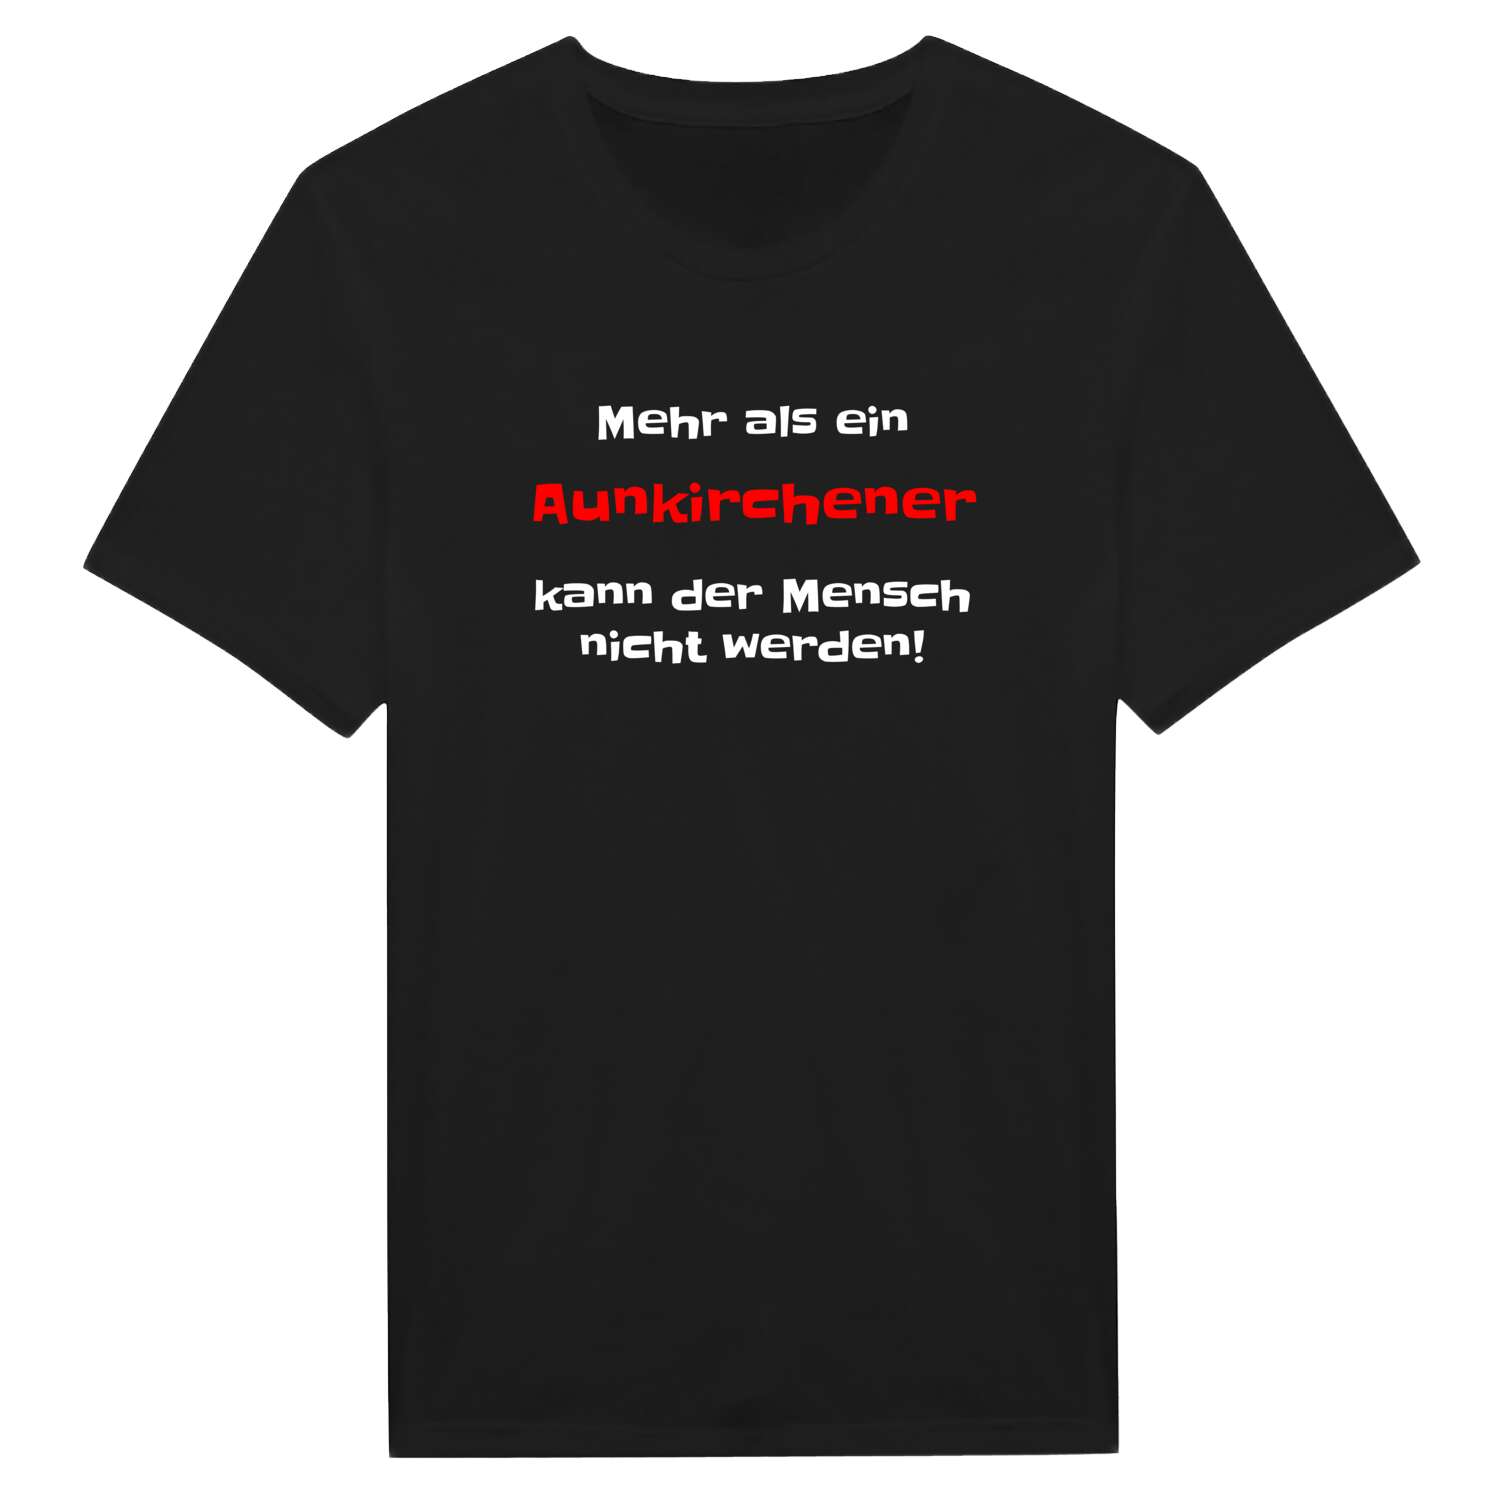 Aunkirchen T-Shirt »Mehr als ein«